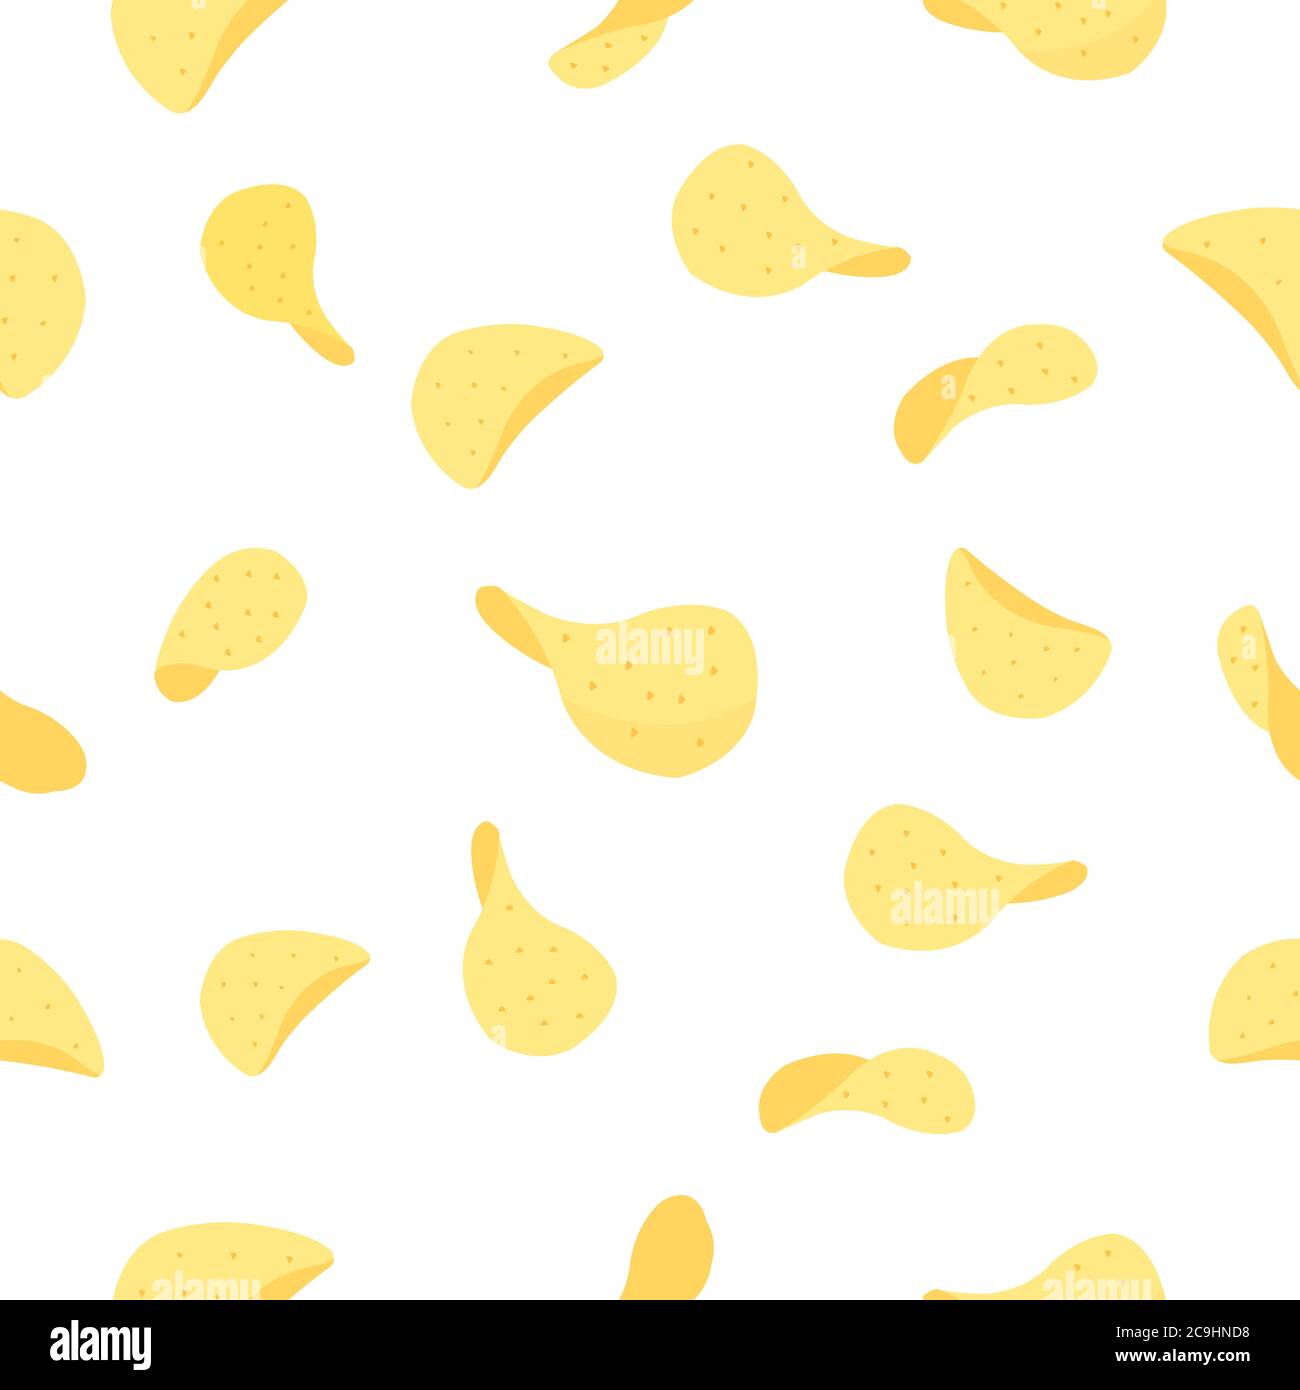 Potato chips seamless pattern background. Seamless potato chips on white background. Stock Vector